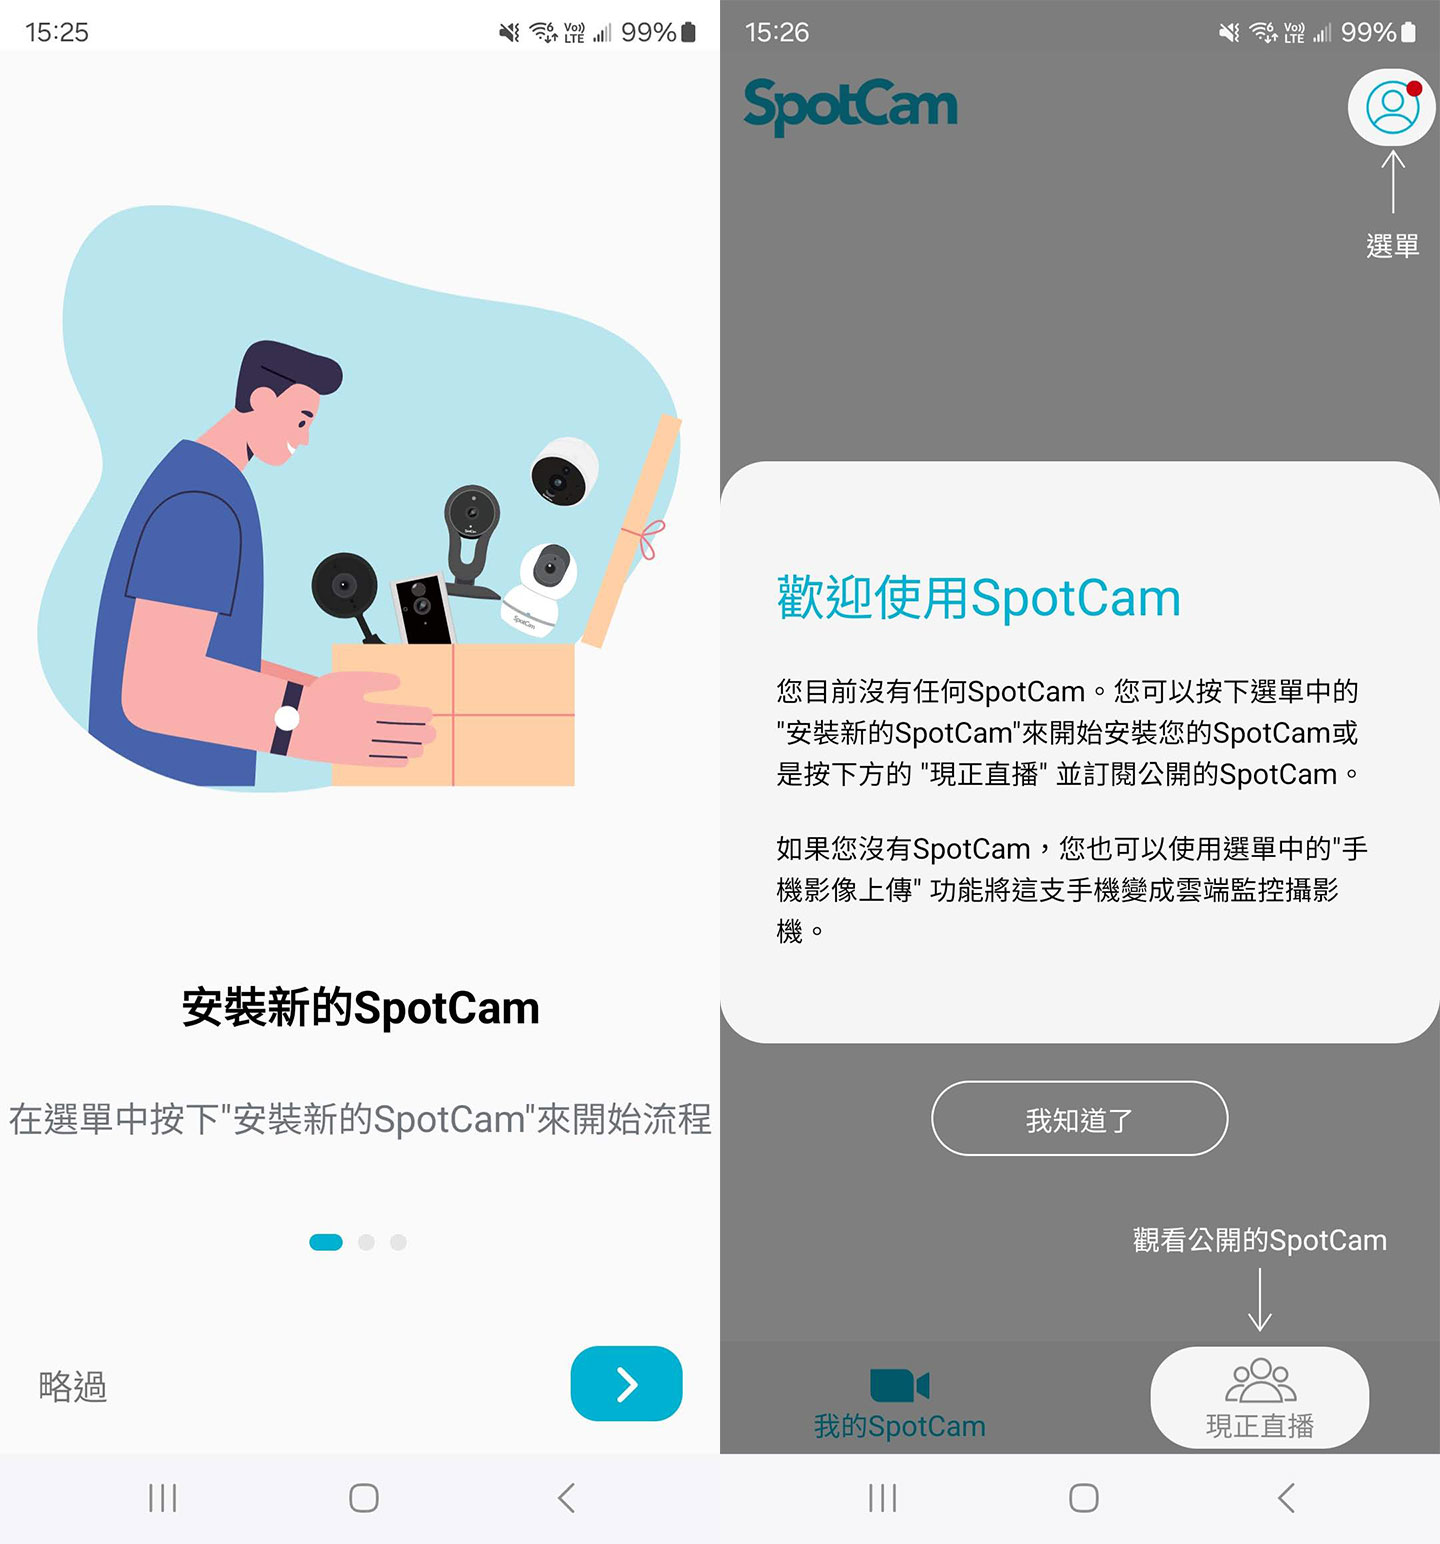 登入帳號後，即可透過系統指引了解 SpotCam App 的使用方式。